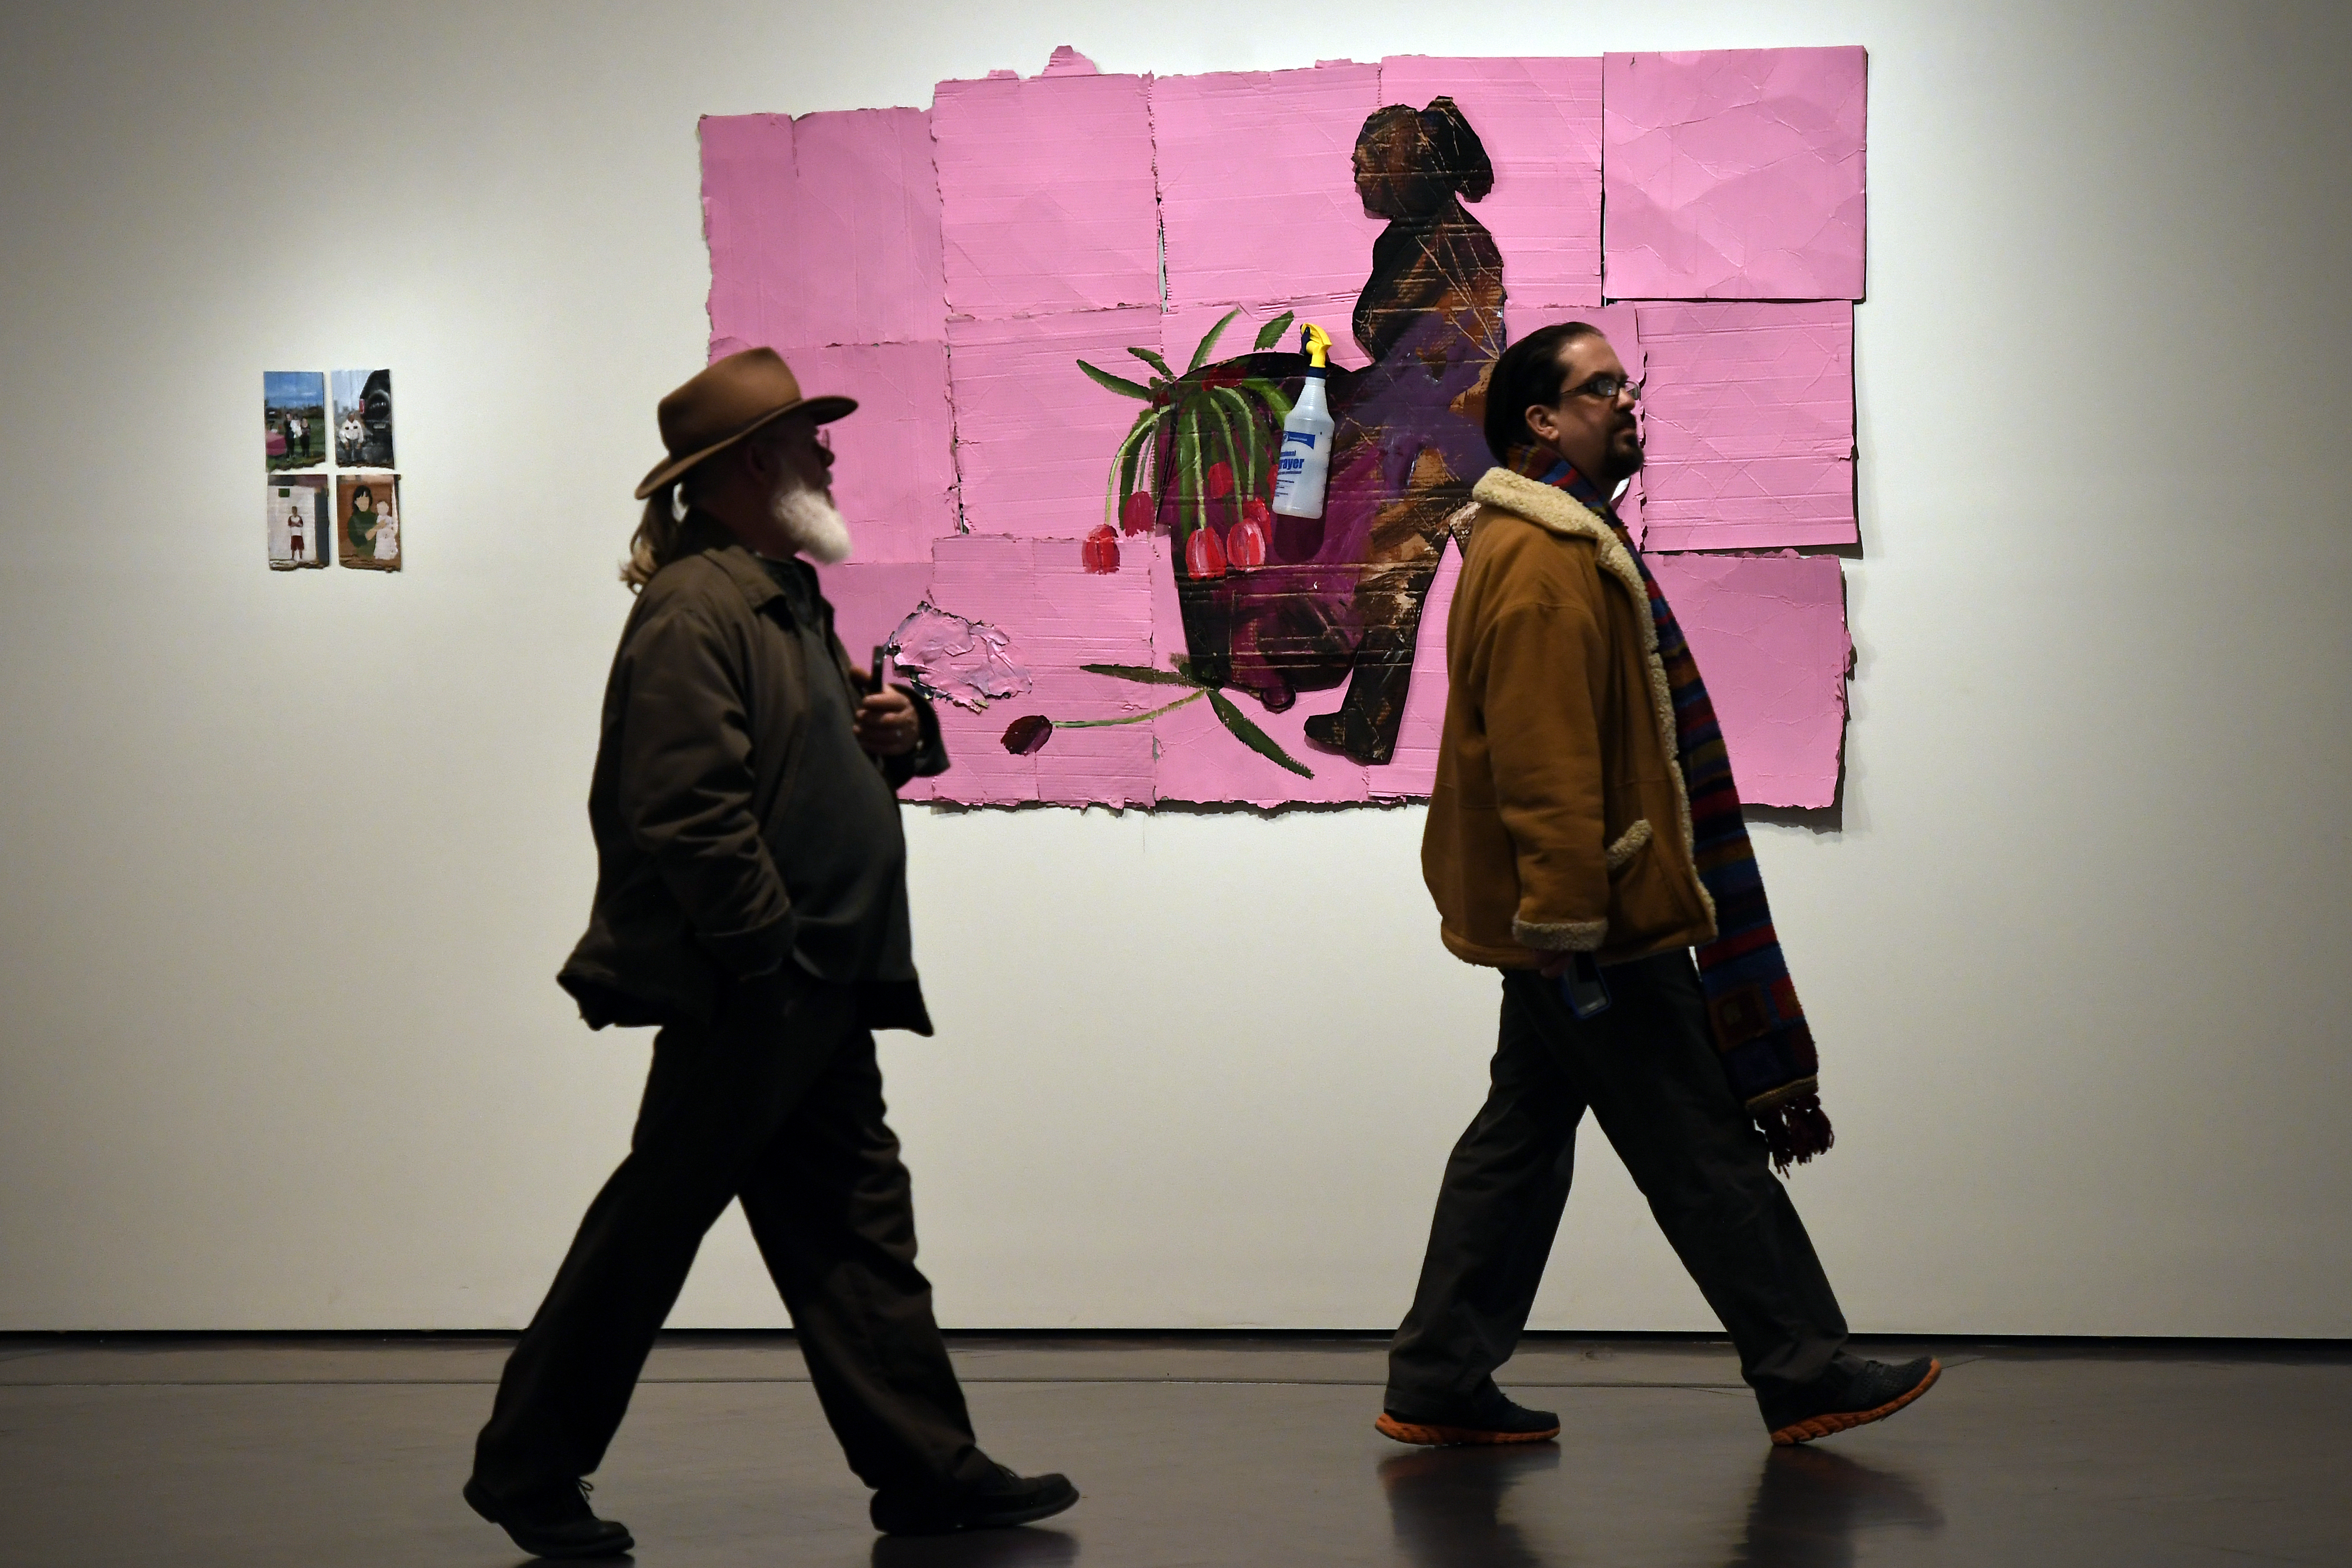 Visitantes frente a la obra de Ramiro Gómez Mi Tierra, en el Contemporary Artists Explore Place durante una exposición de instalaciones de artistas latinos que comparten sus experiencias de vida en el oeste americano, Museo de Arte de Denver, febrero de 2017.